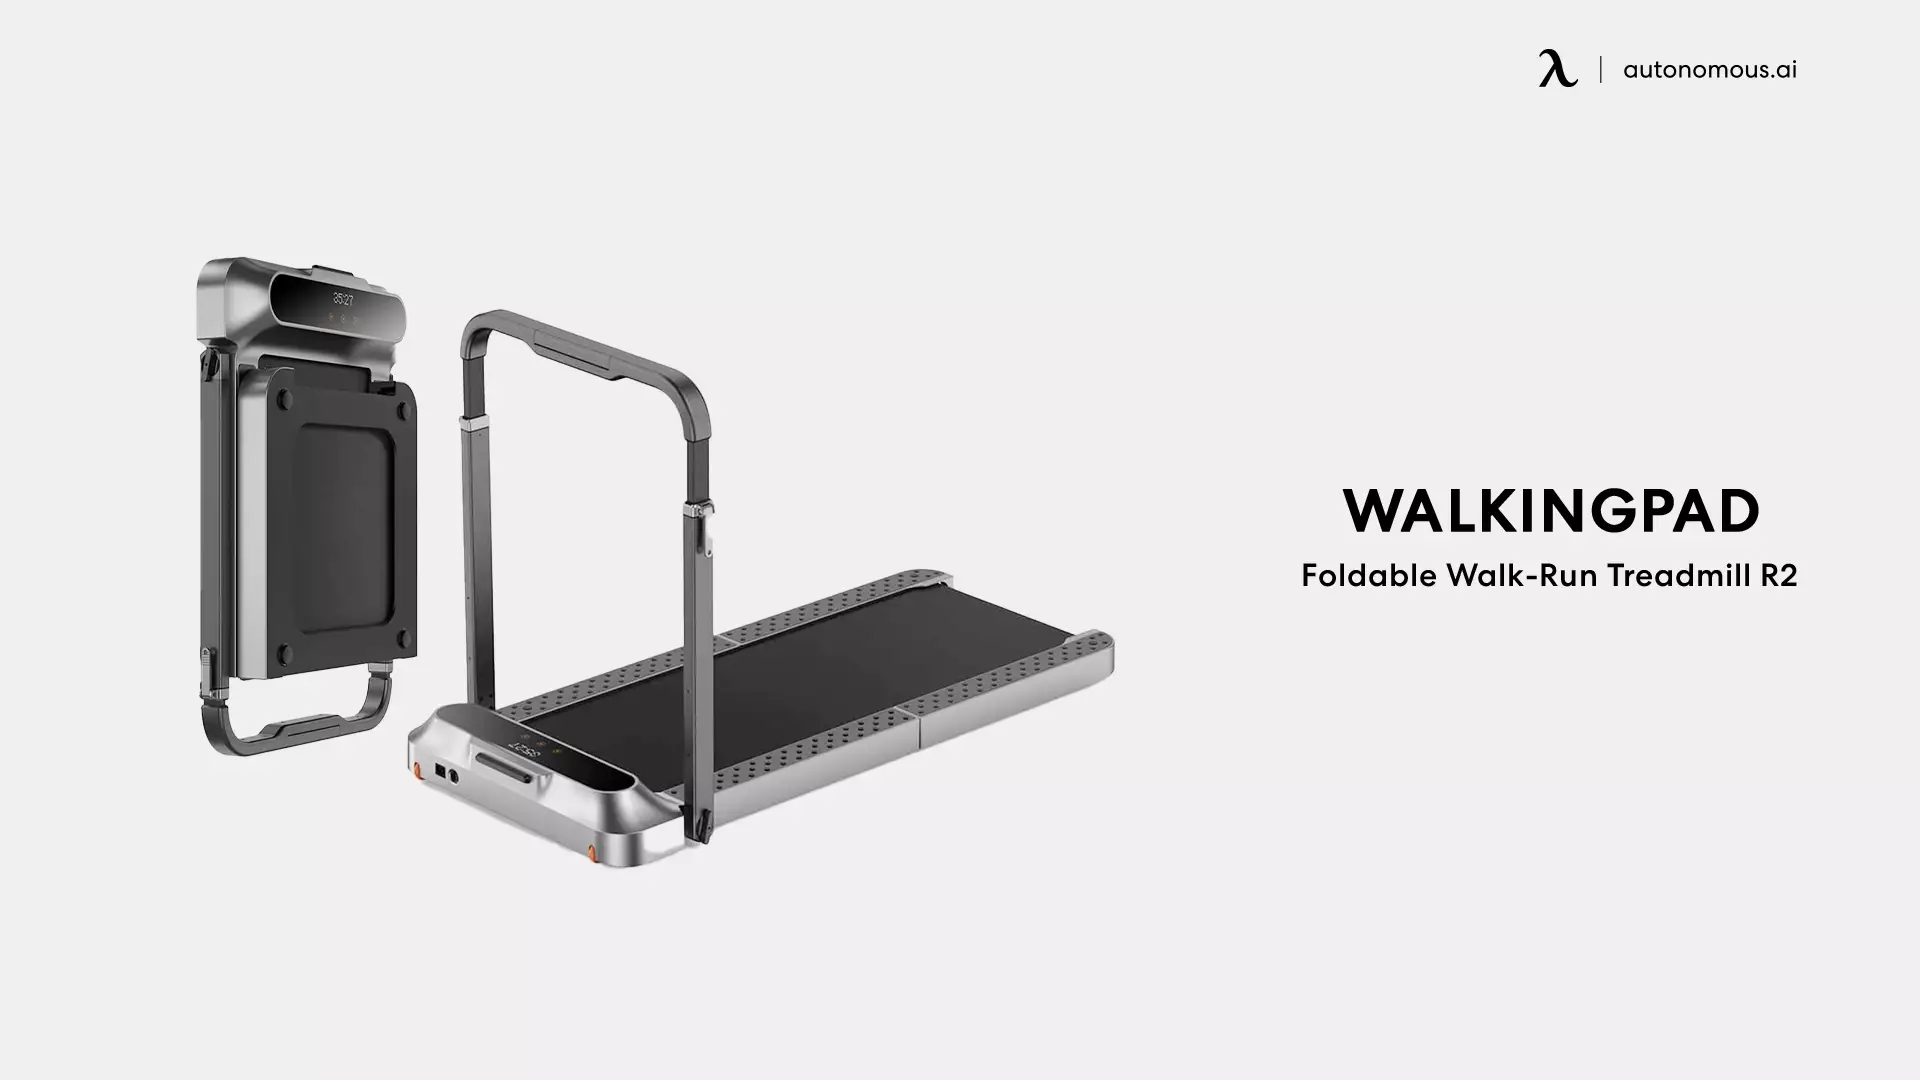 WalkingPad Foldable Walk-Run Treadmill R2